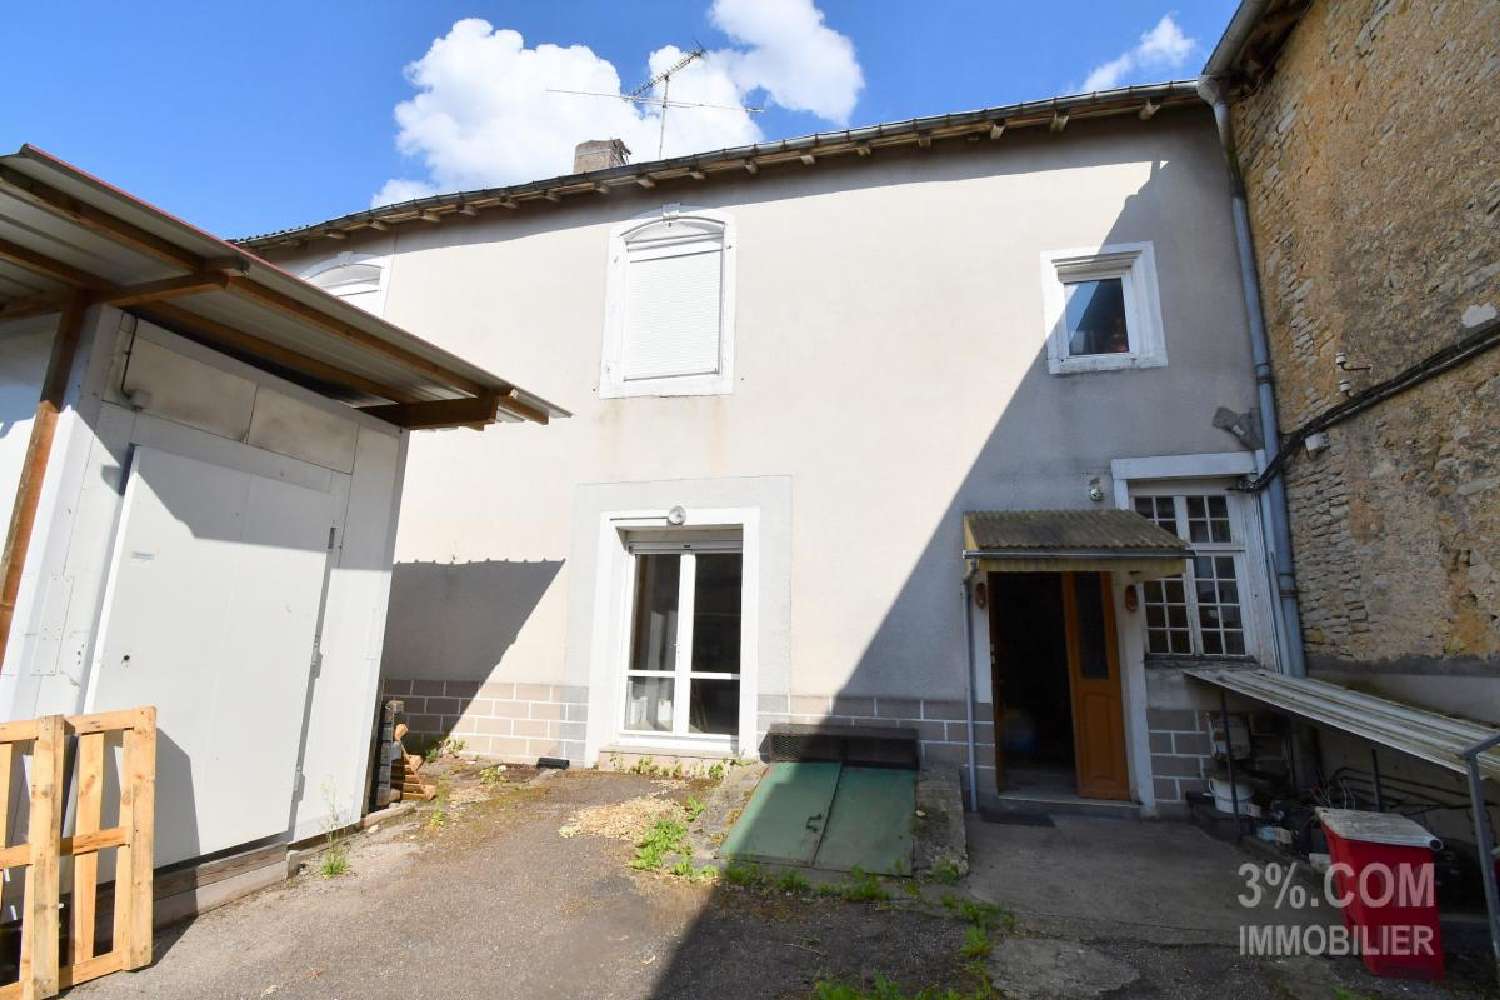  te koop huis Colombey-les-Belles Meurthe-et-Moselle 2